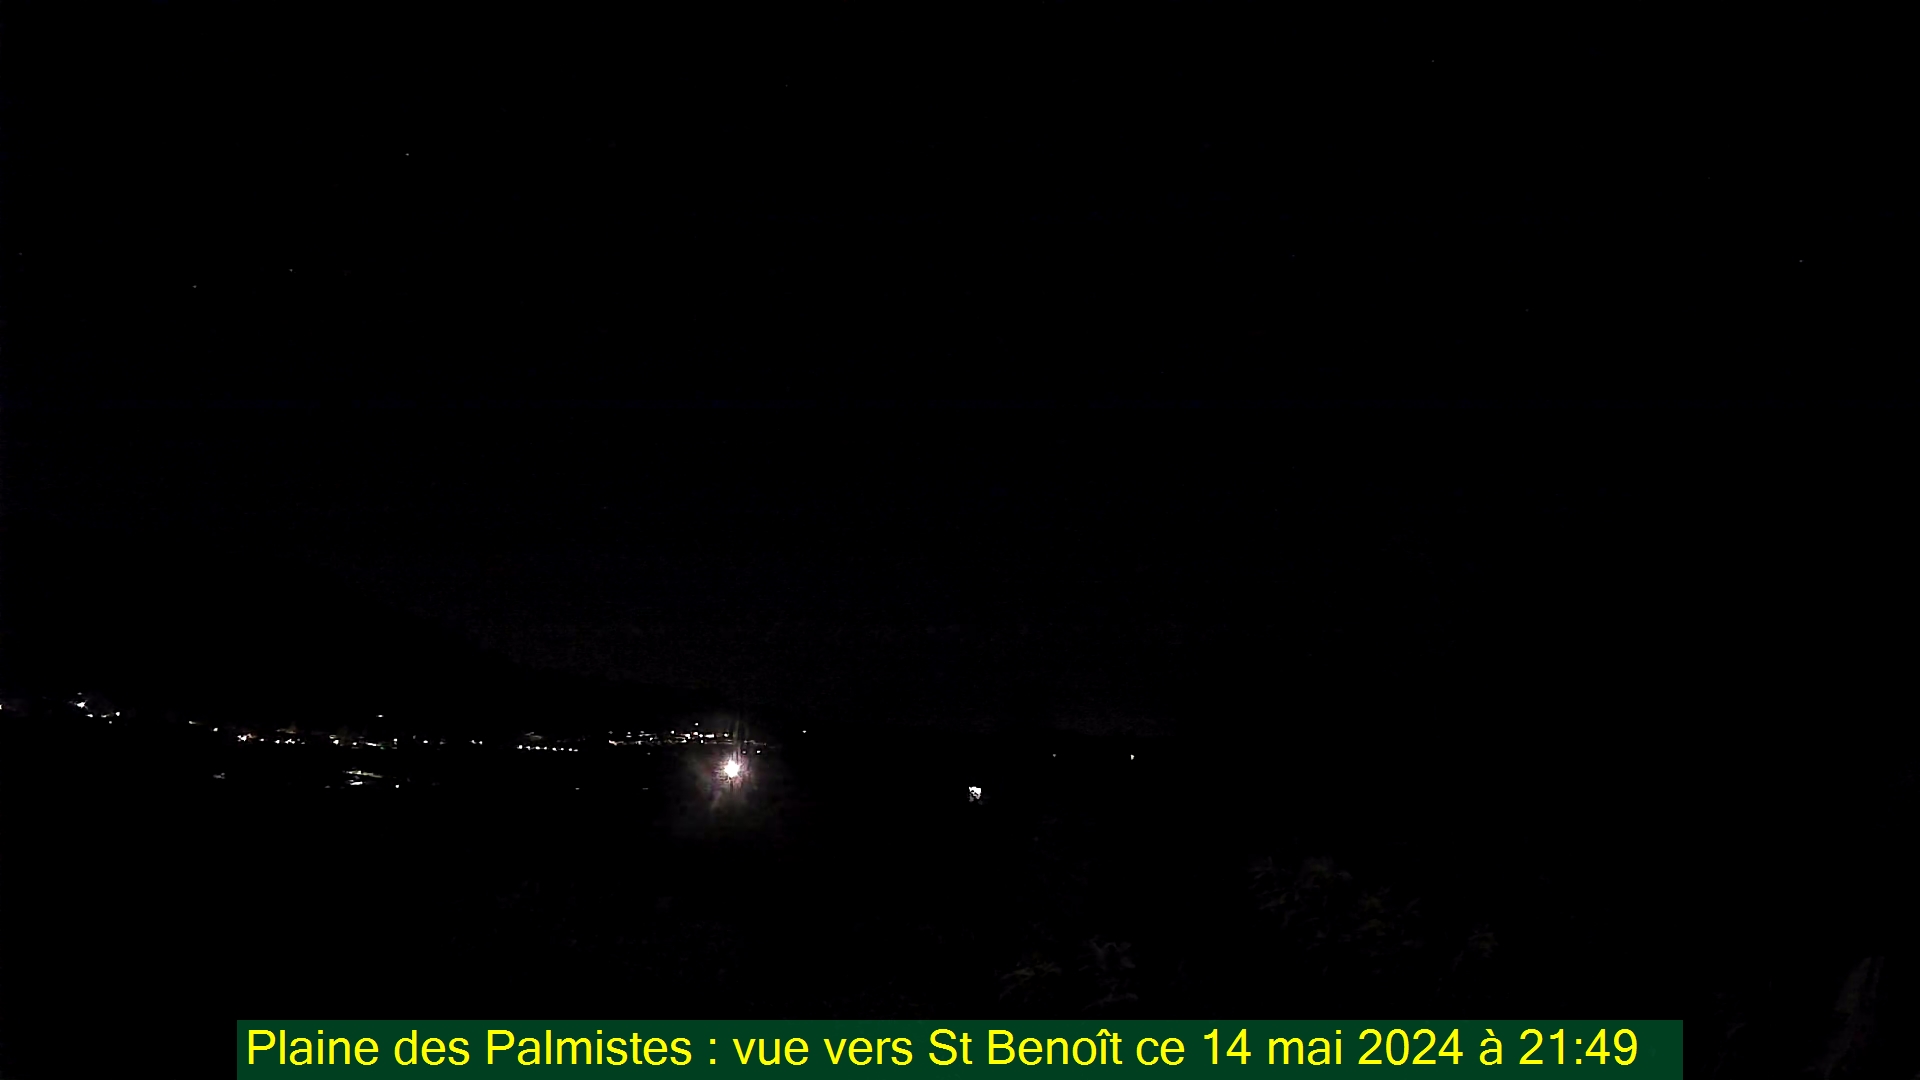 Saint-Denis (Réunion) Do. 21:50